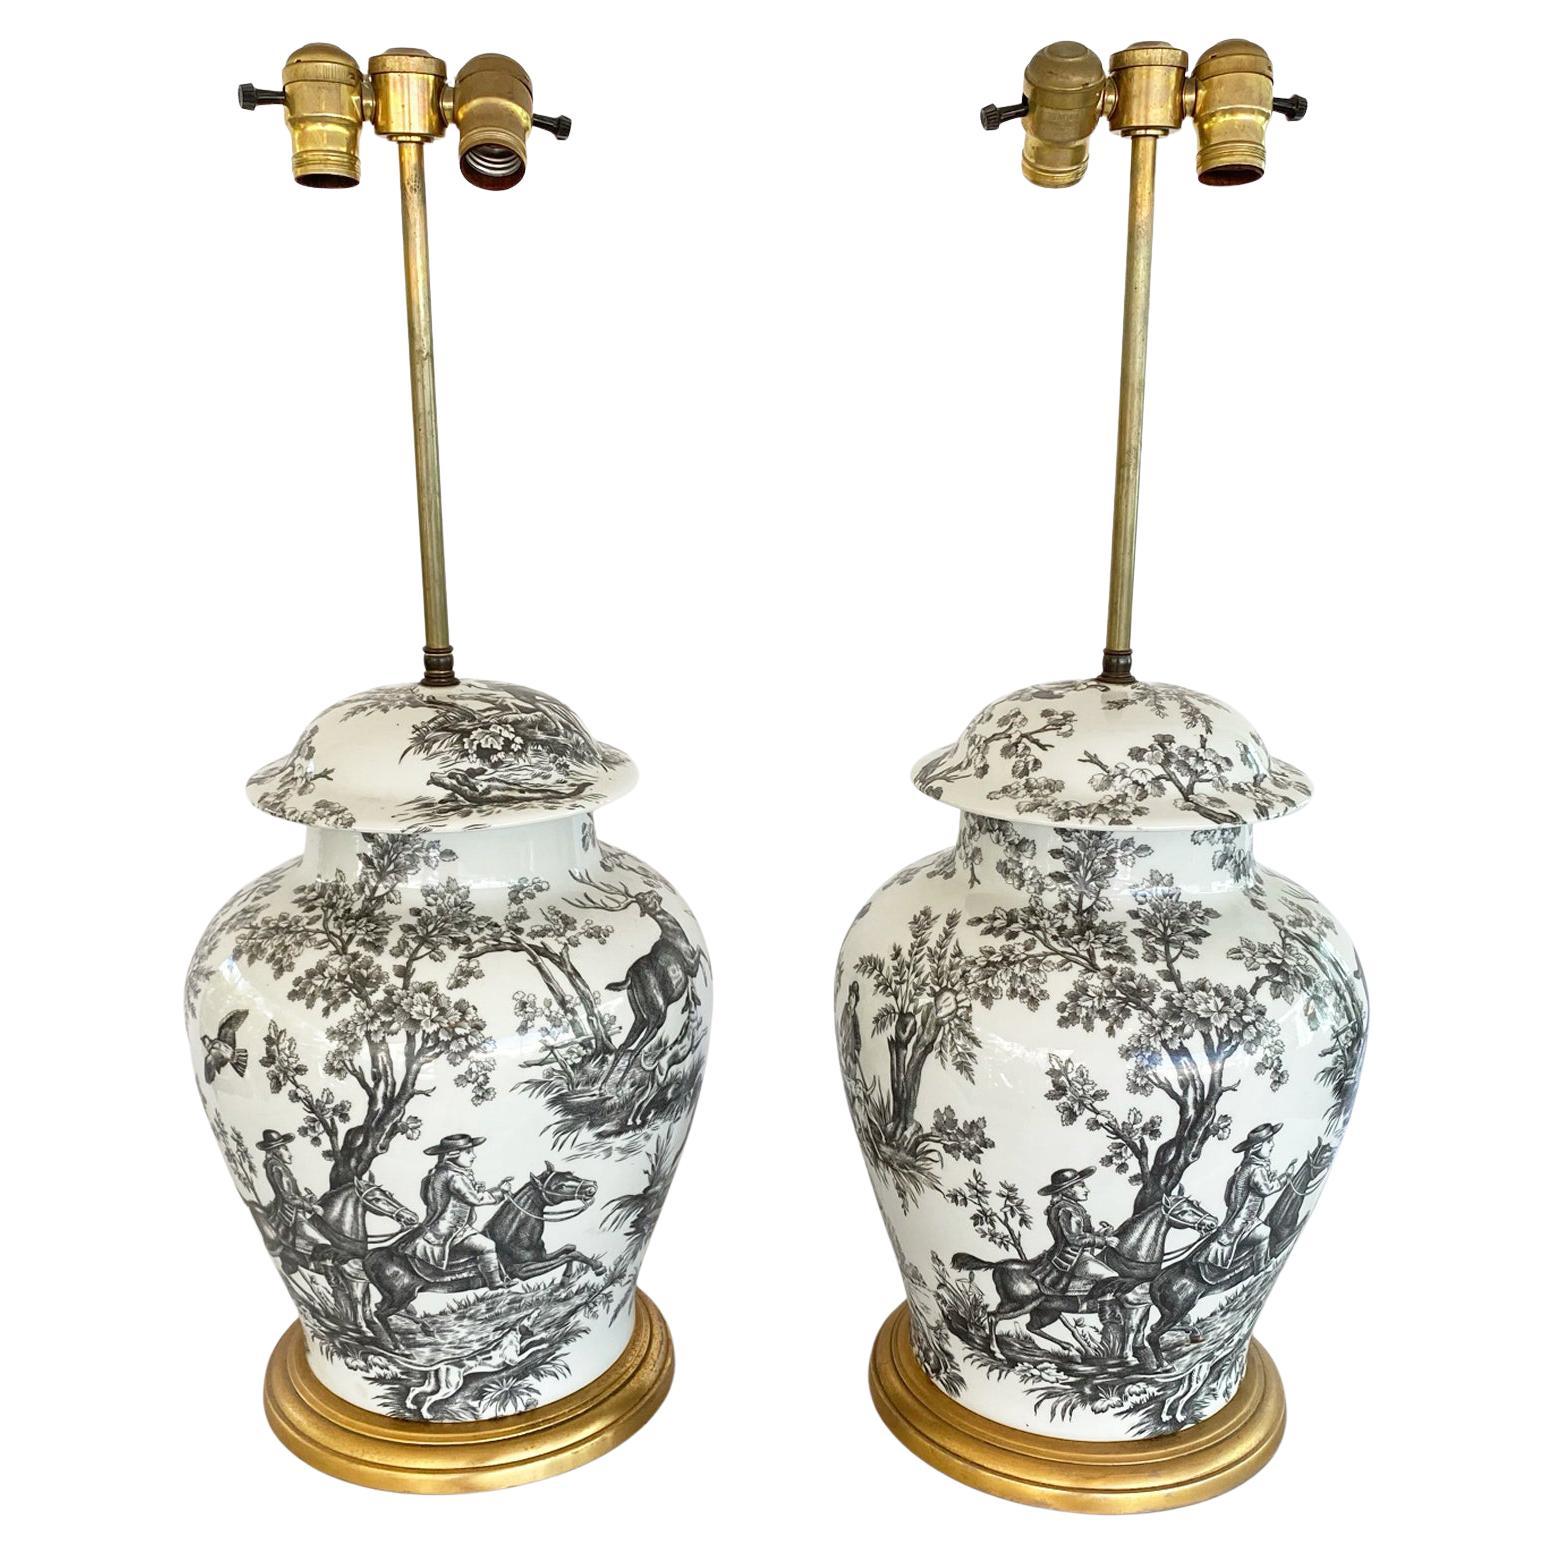 Pair of Toile Ginger Jar Lamps by Porcelaine de Paris